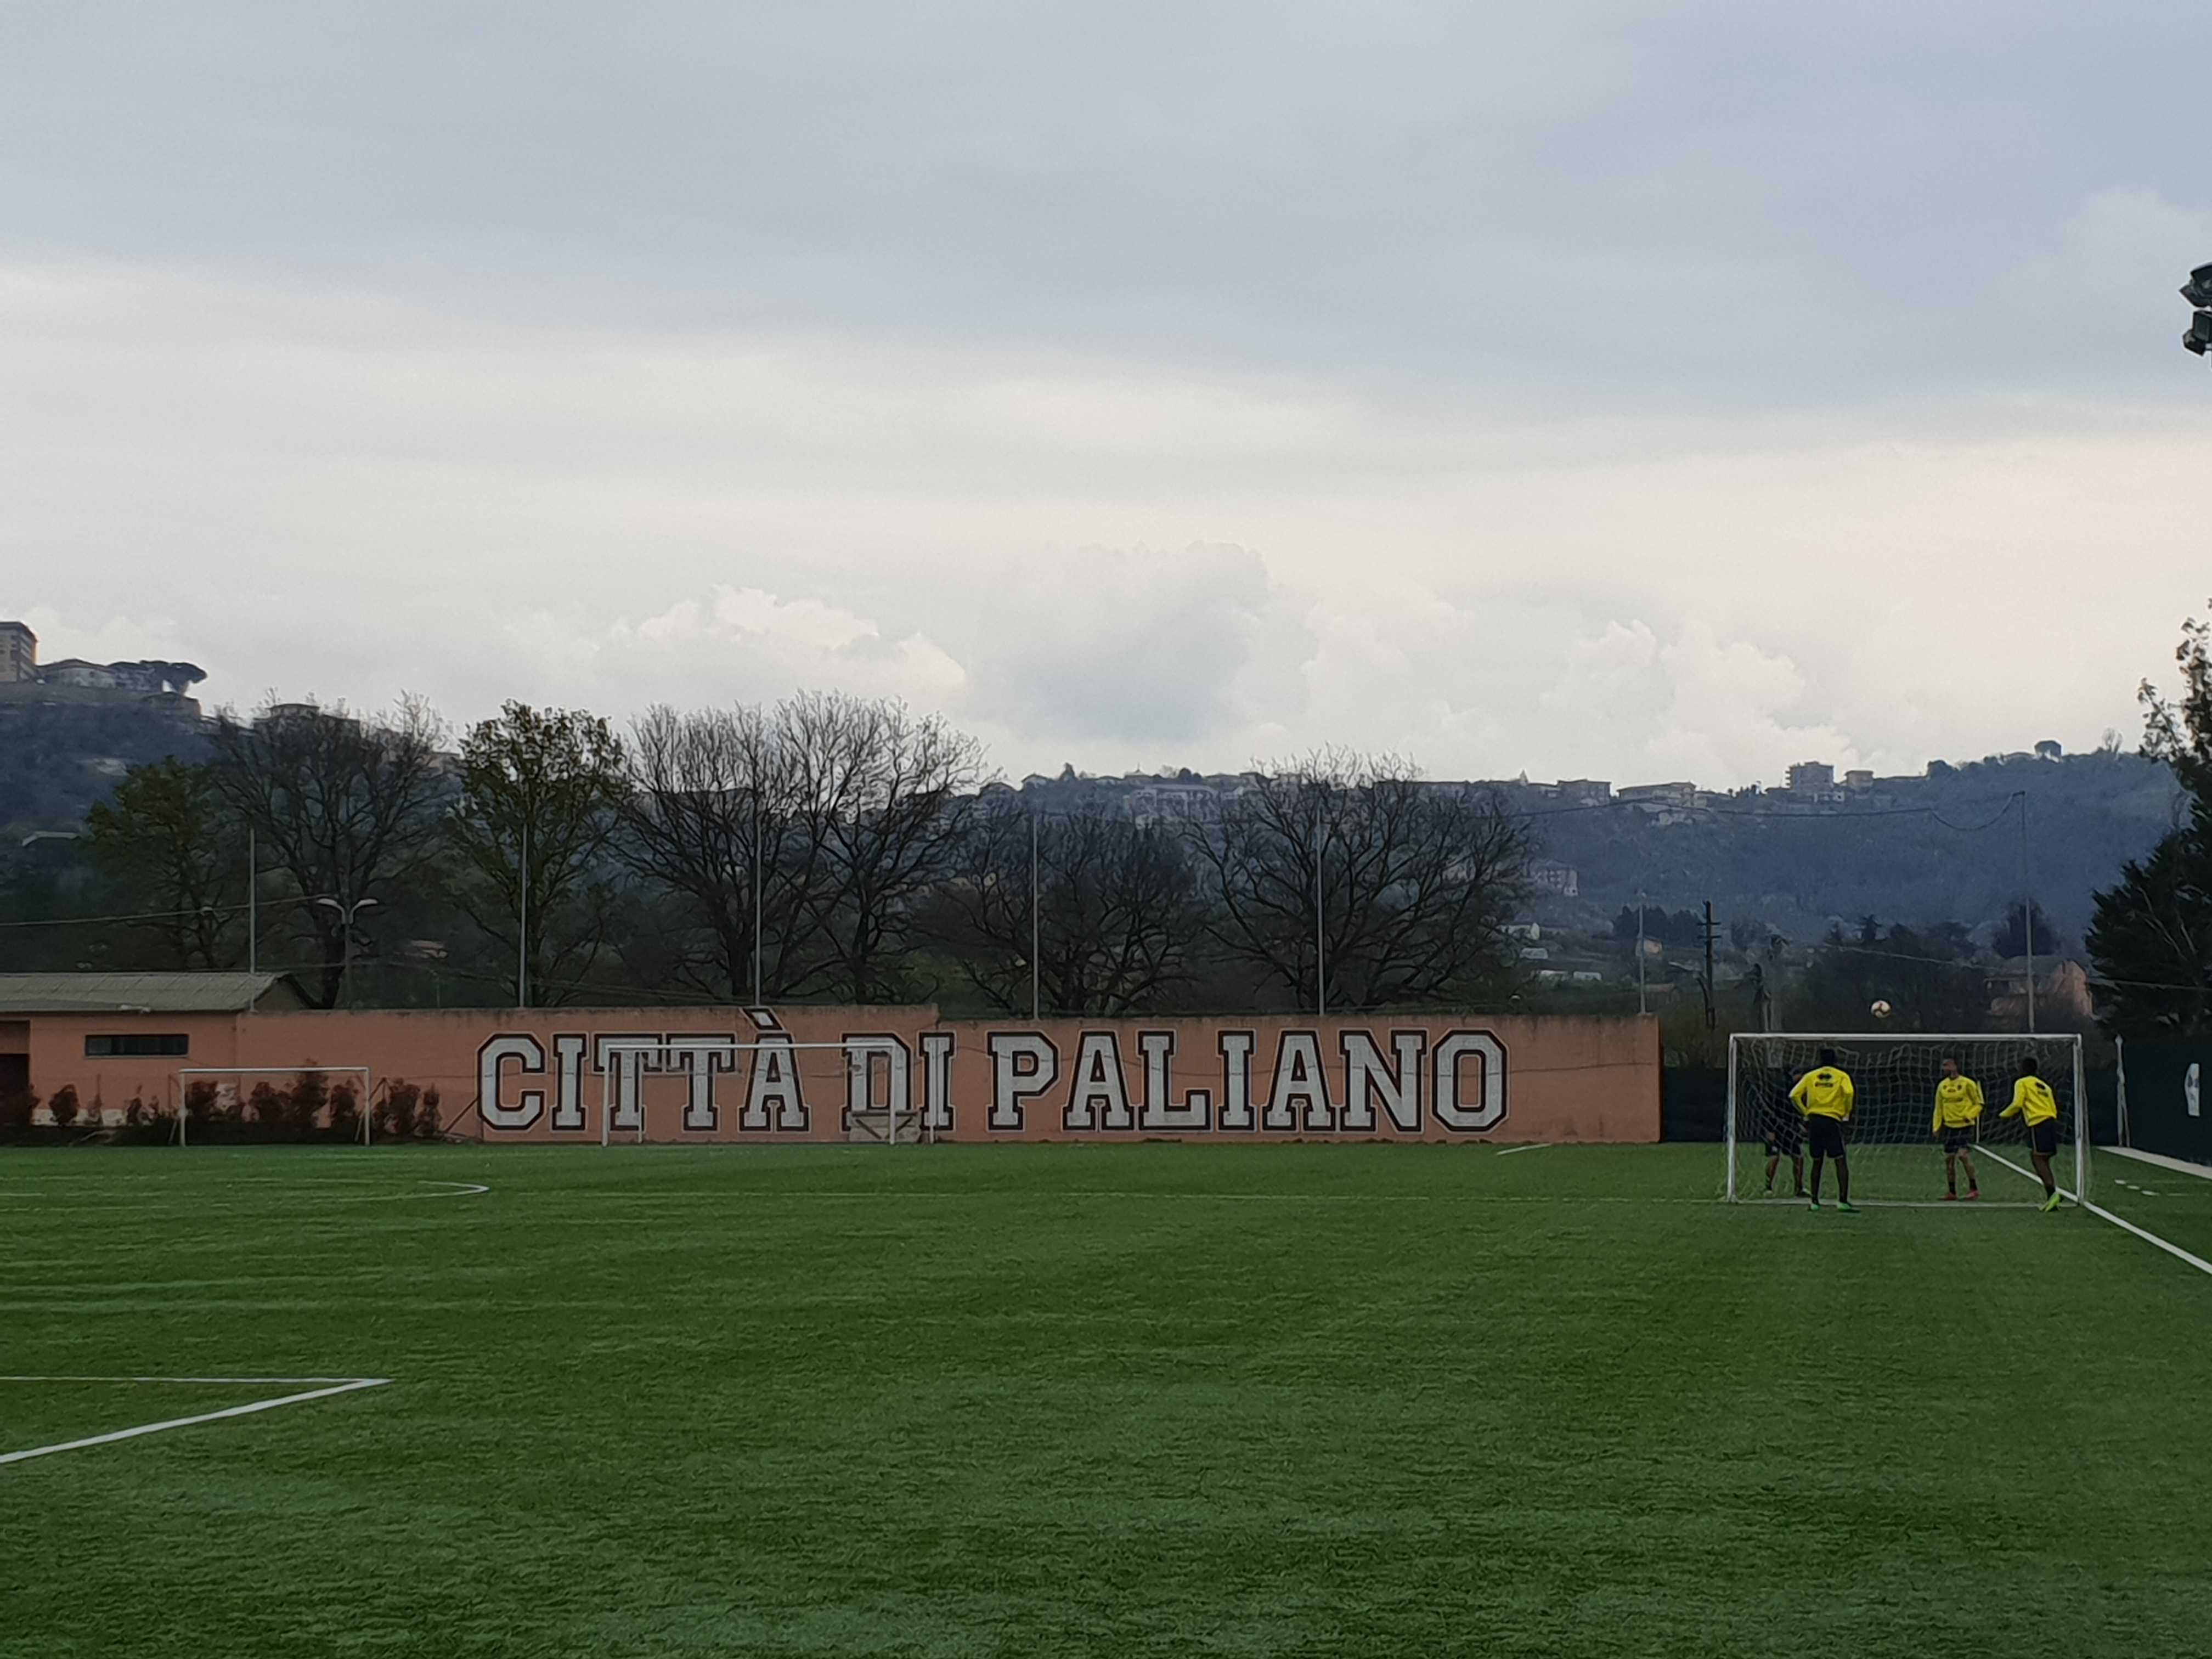 Serie A Tim: Frosinone - Parma, i gialloblu ospiti al "Tintisona" di Paliano